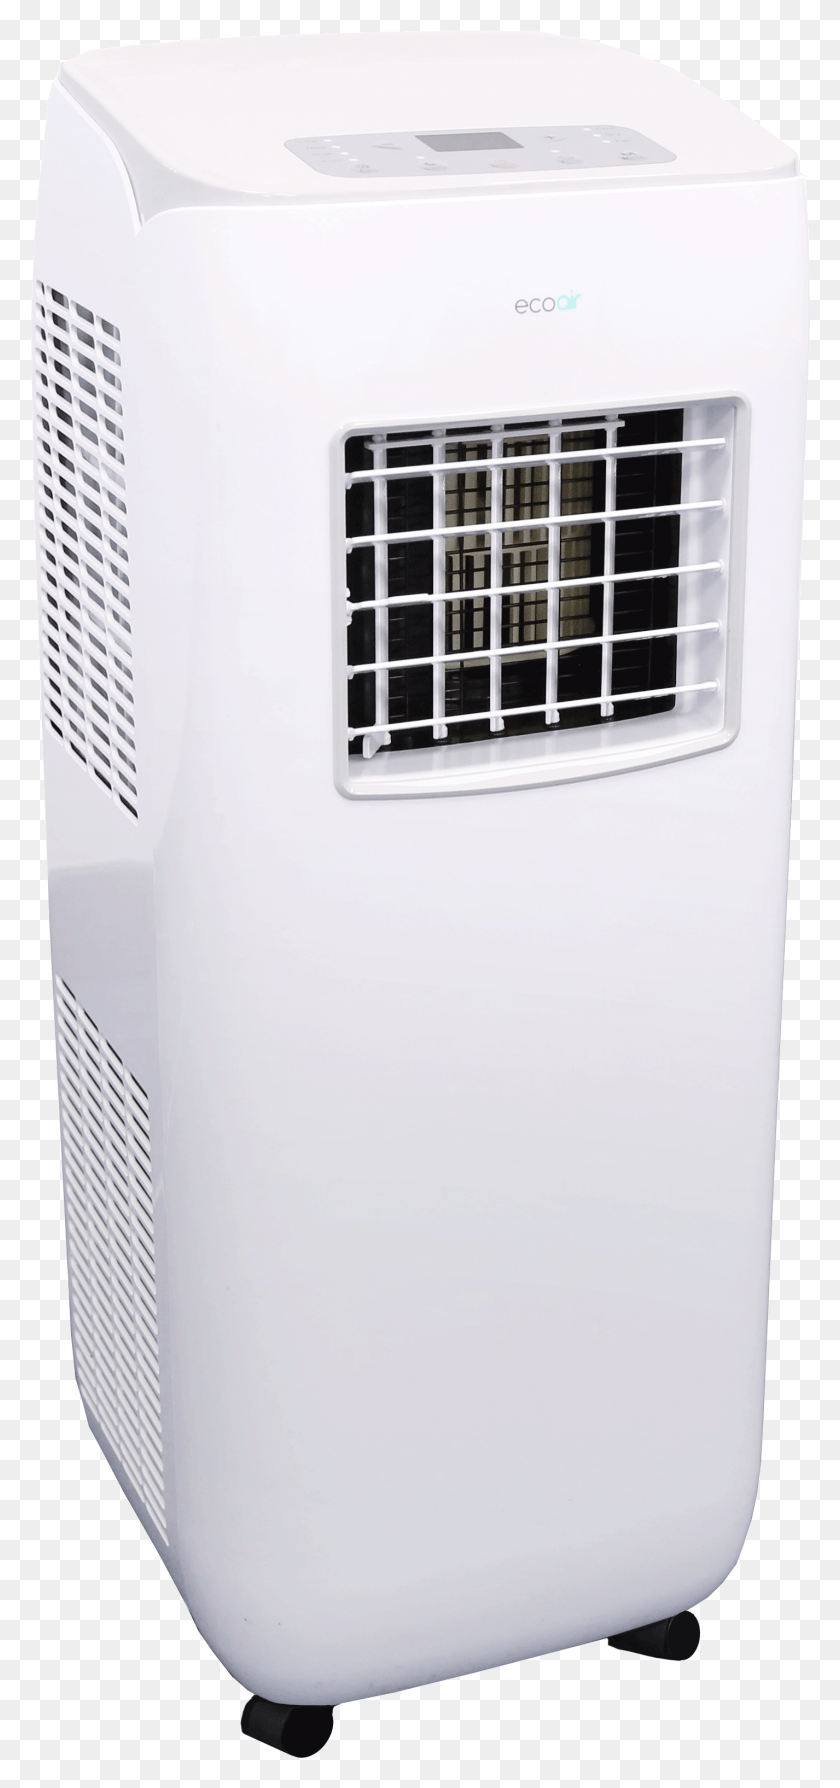 1426x3160 Descargar Png Equipo De Aire Acondicionado Portátil De Cristal, Refrigerador, Refrigerador Hd Png